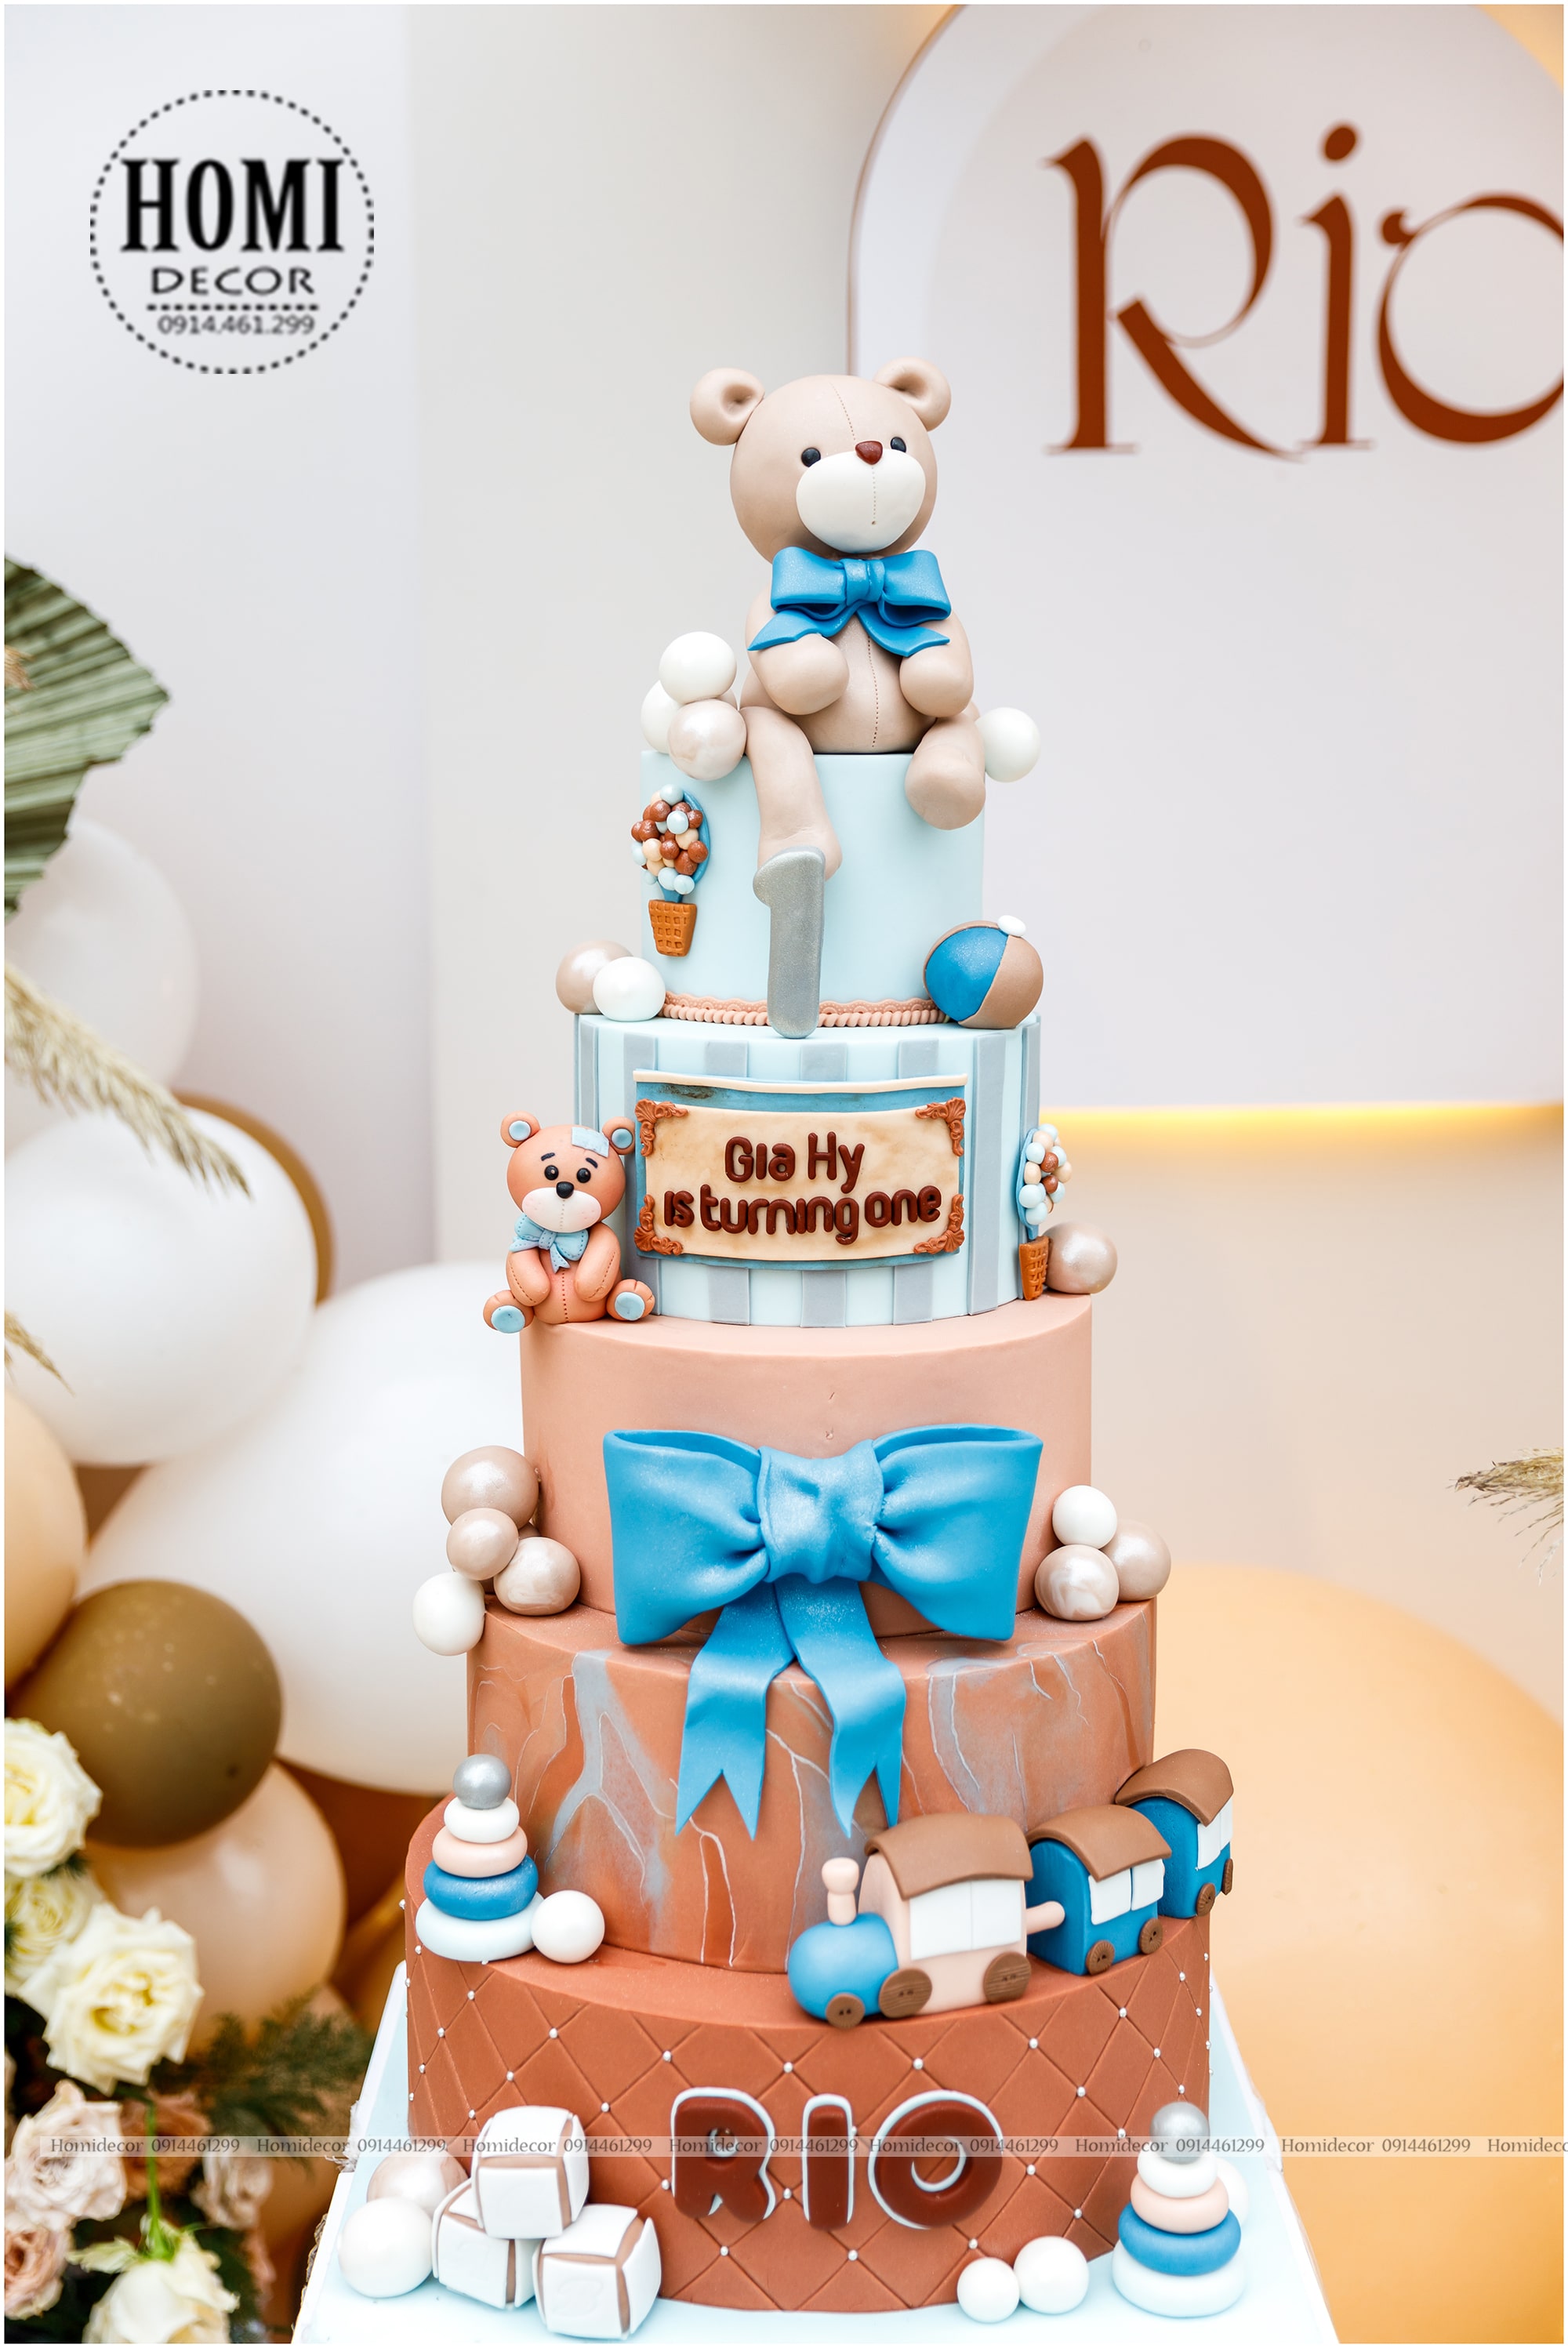 Trang trí sinh nhật bé Rio chủ đề gấu